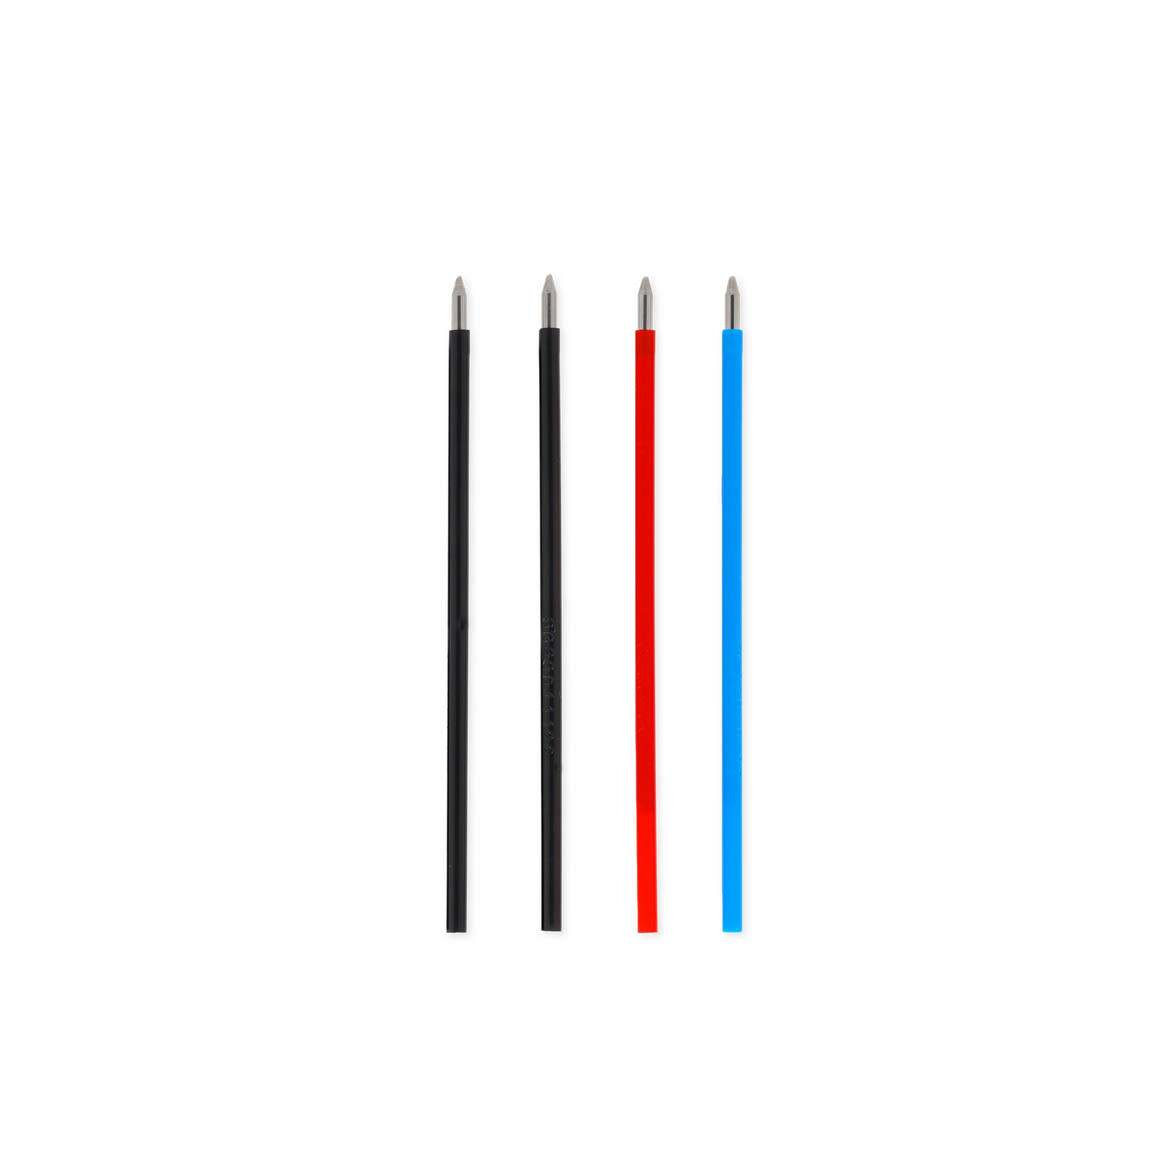 Legami zselés tollbetét 3-színű radírozható tollhoz, 4db/szett STATIONERY